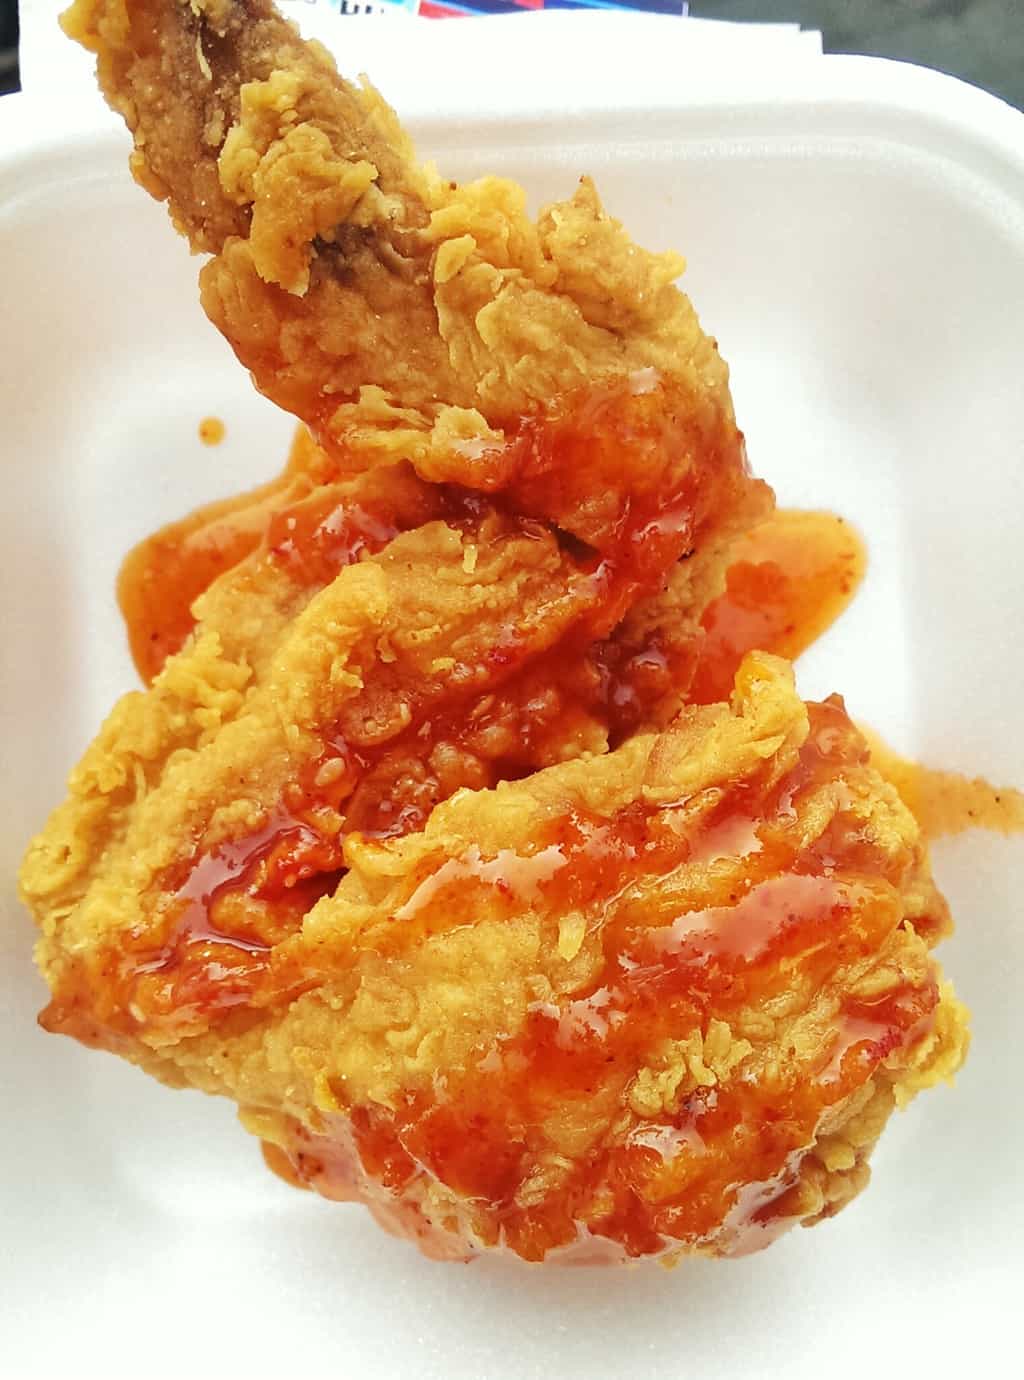 Korean-style fried chicken